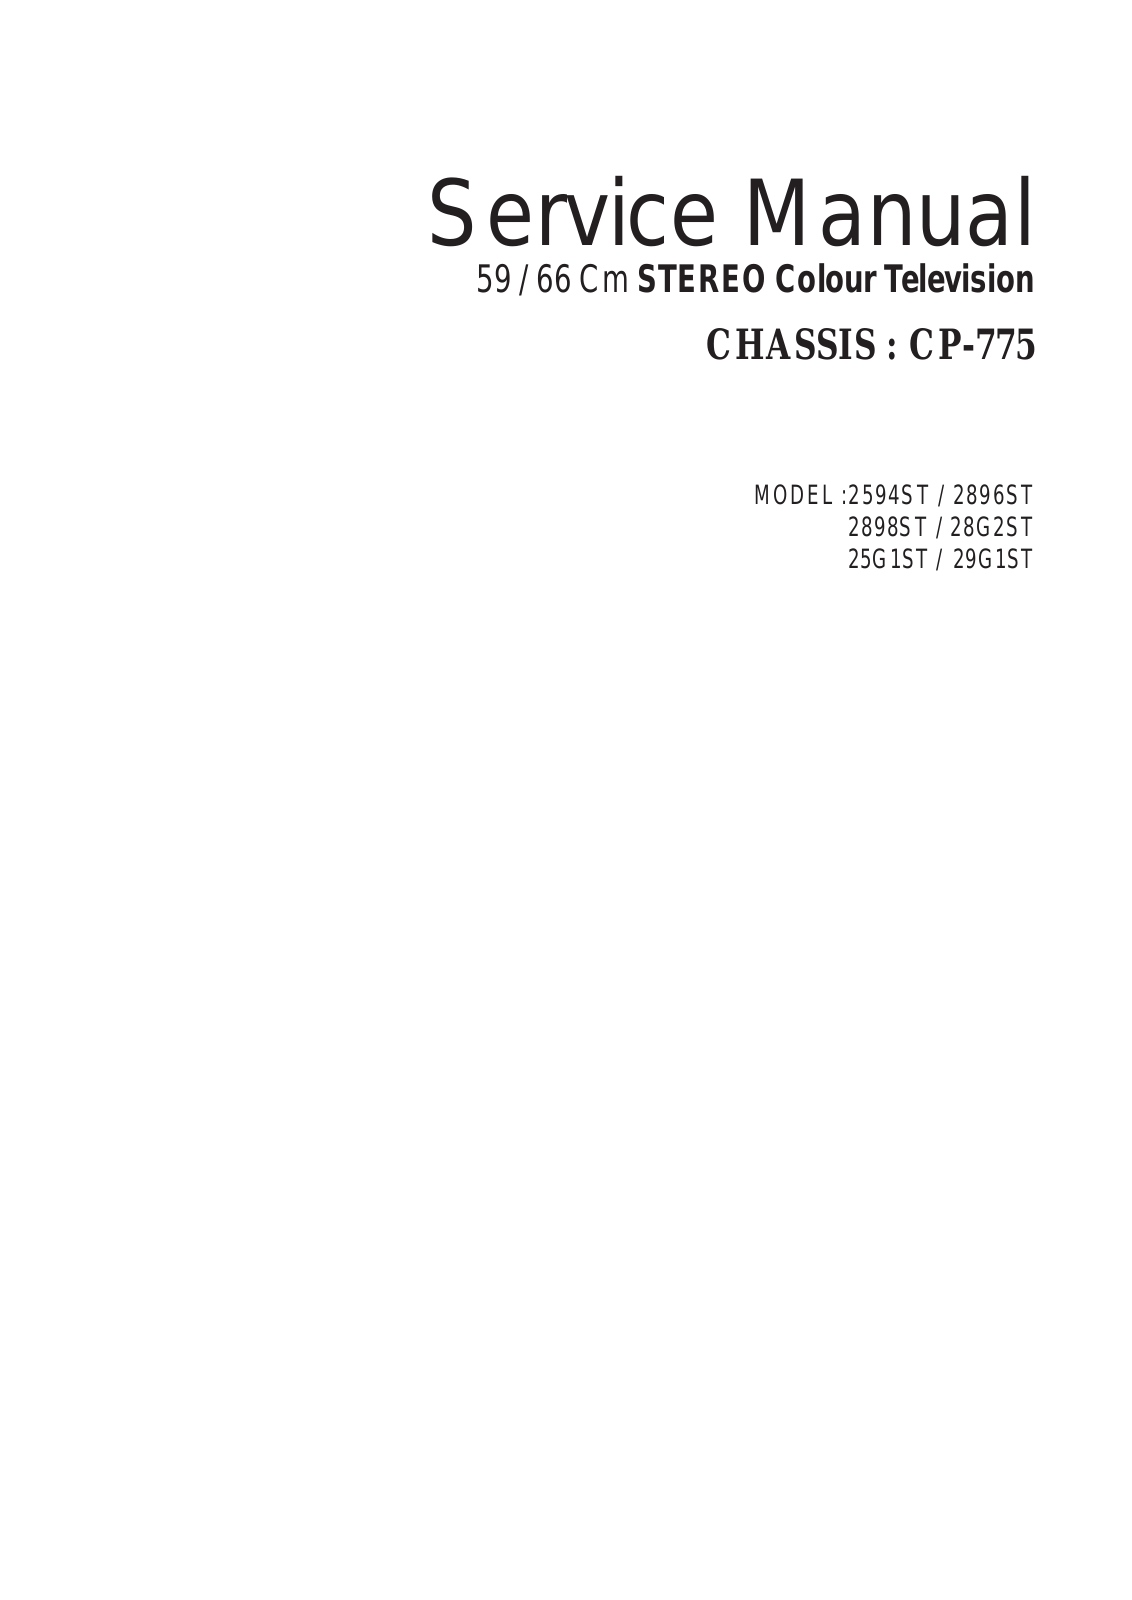 Daewoo CP-775, 29G1ST, 25G1ST, 28G2ST, 2898ST Service Manual